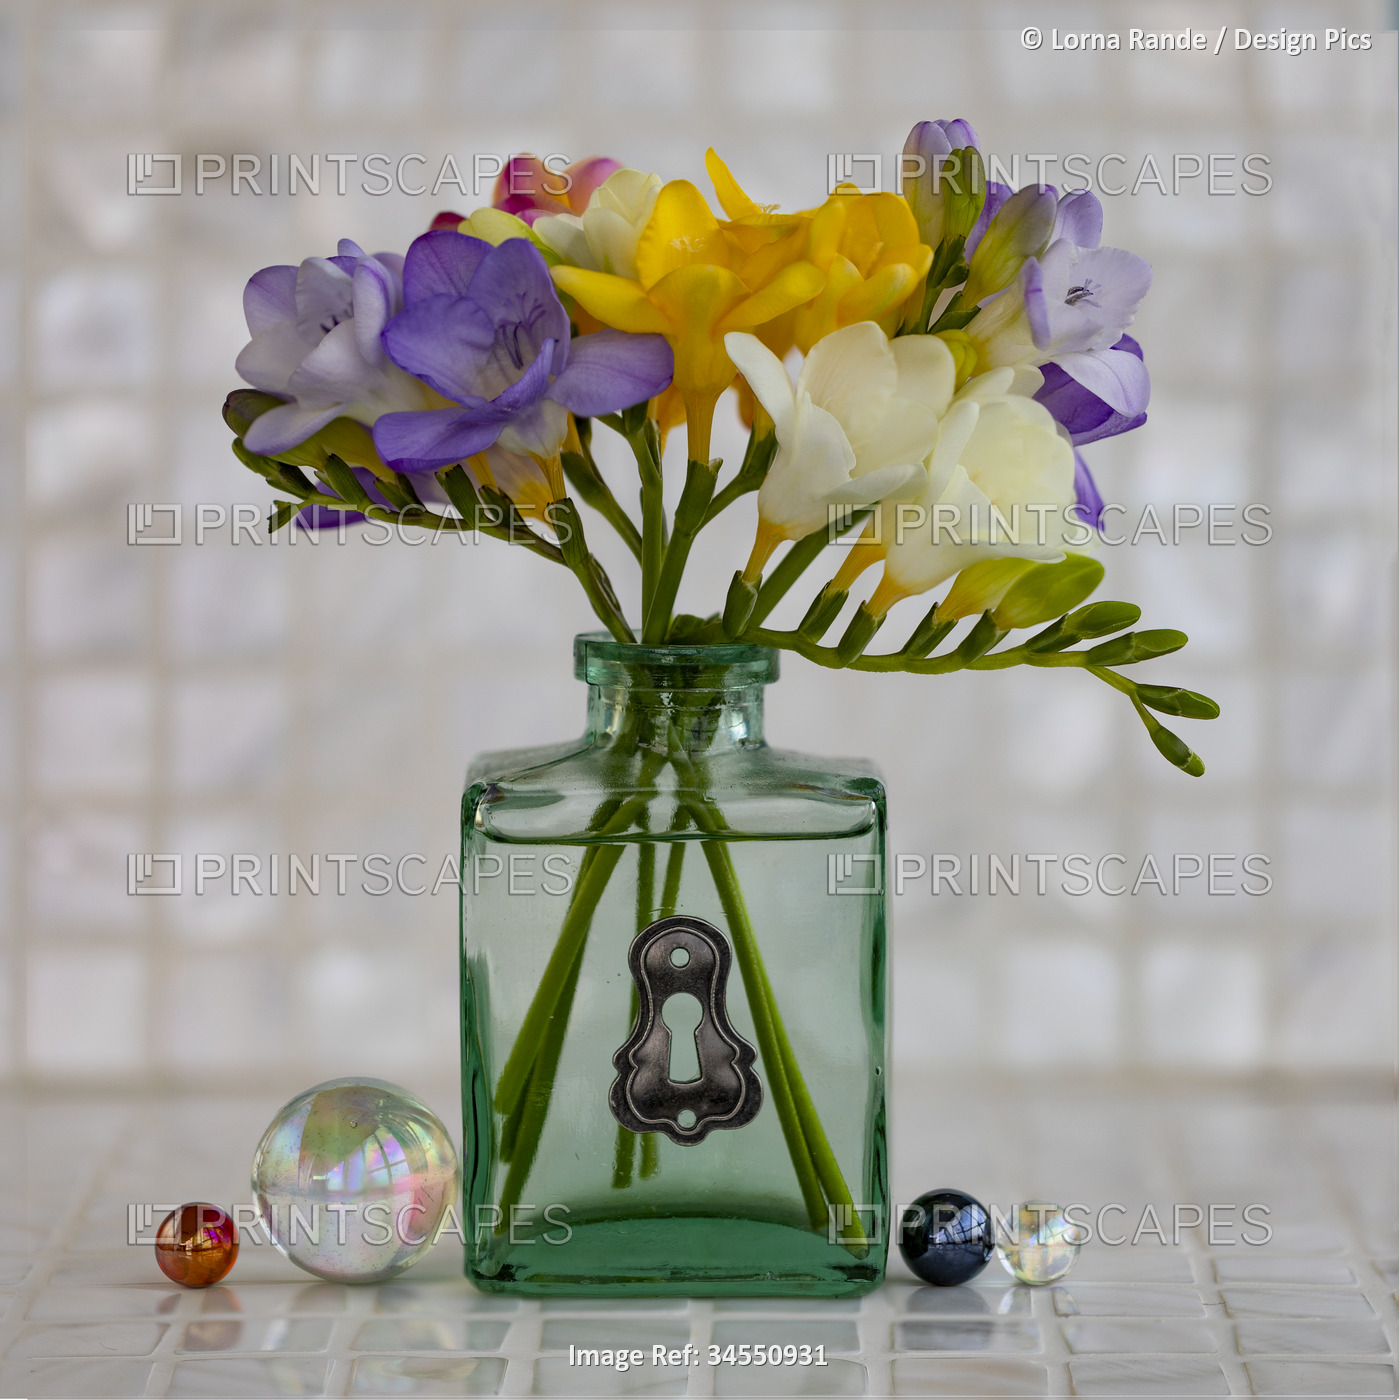 Freesias arranged in a glass vase; Studio